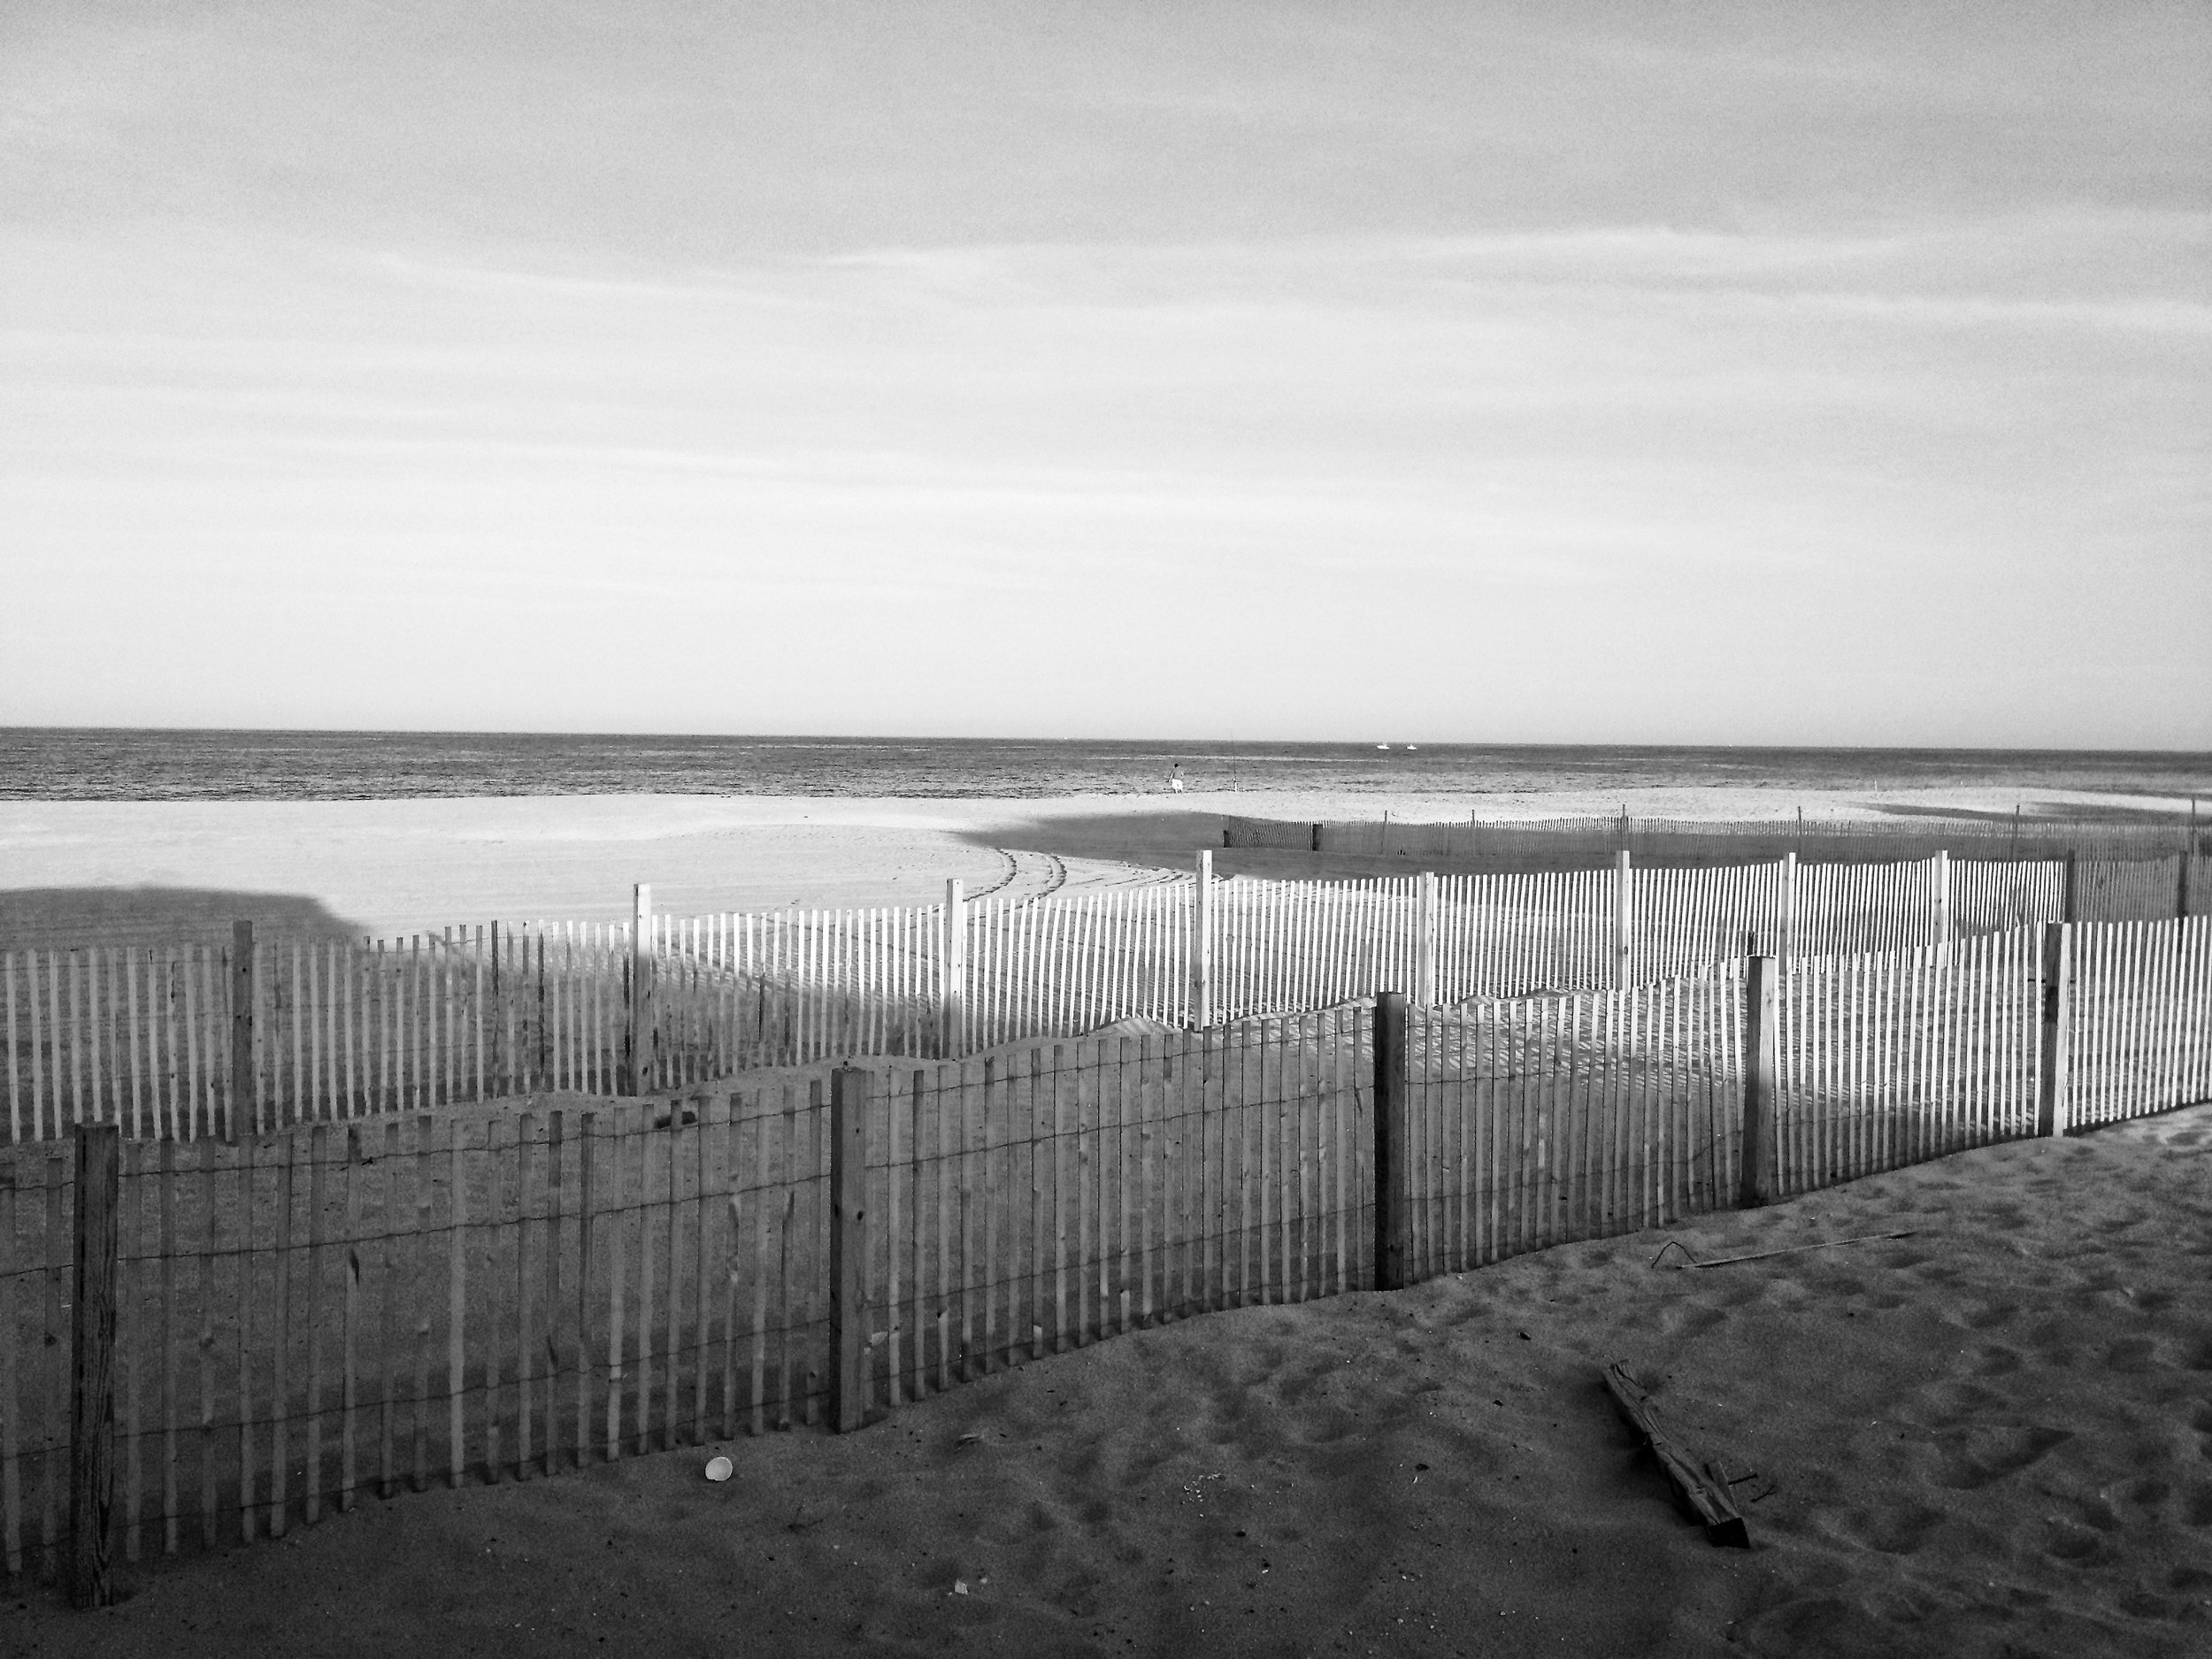  Point Pleasant Beach, NJ  2013 